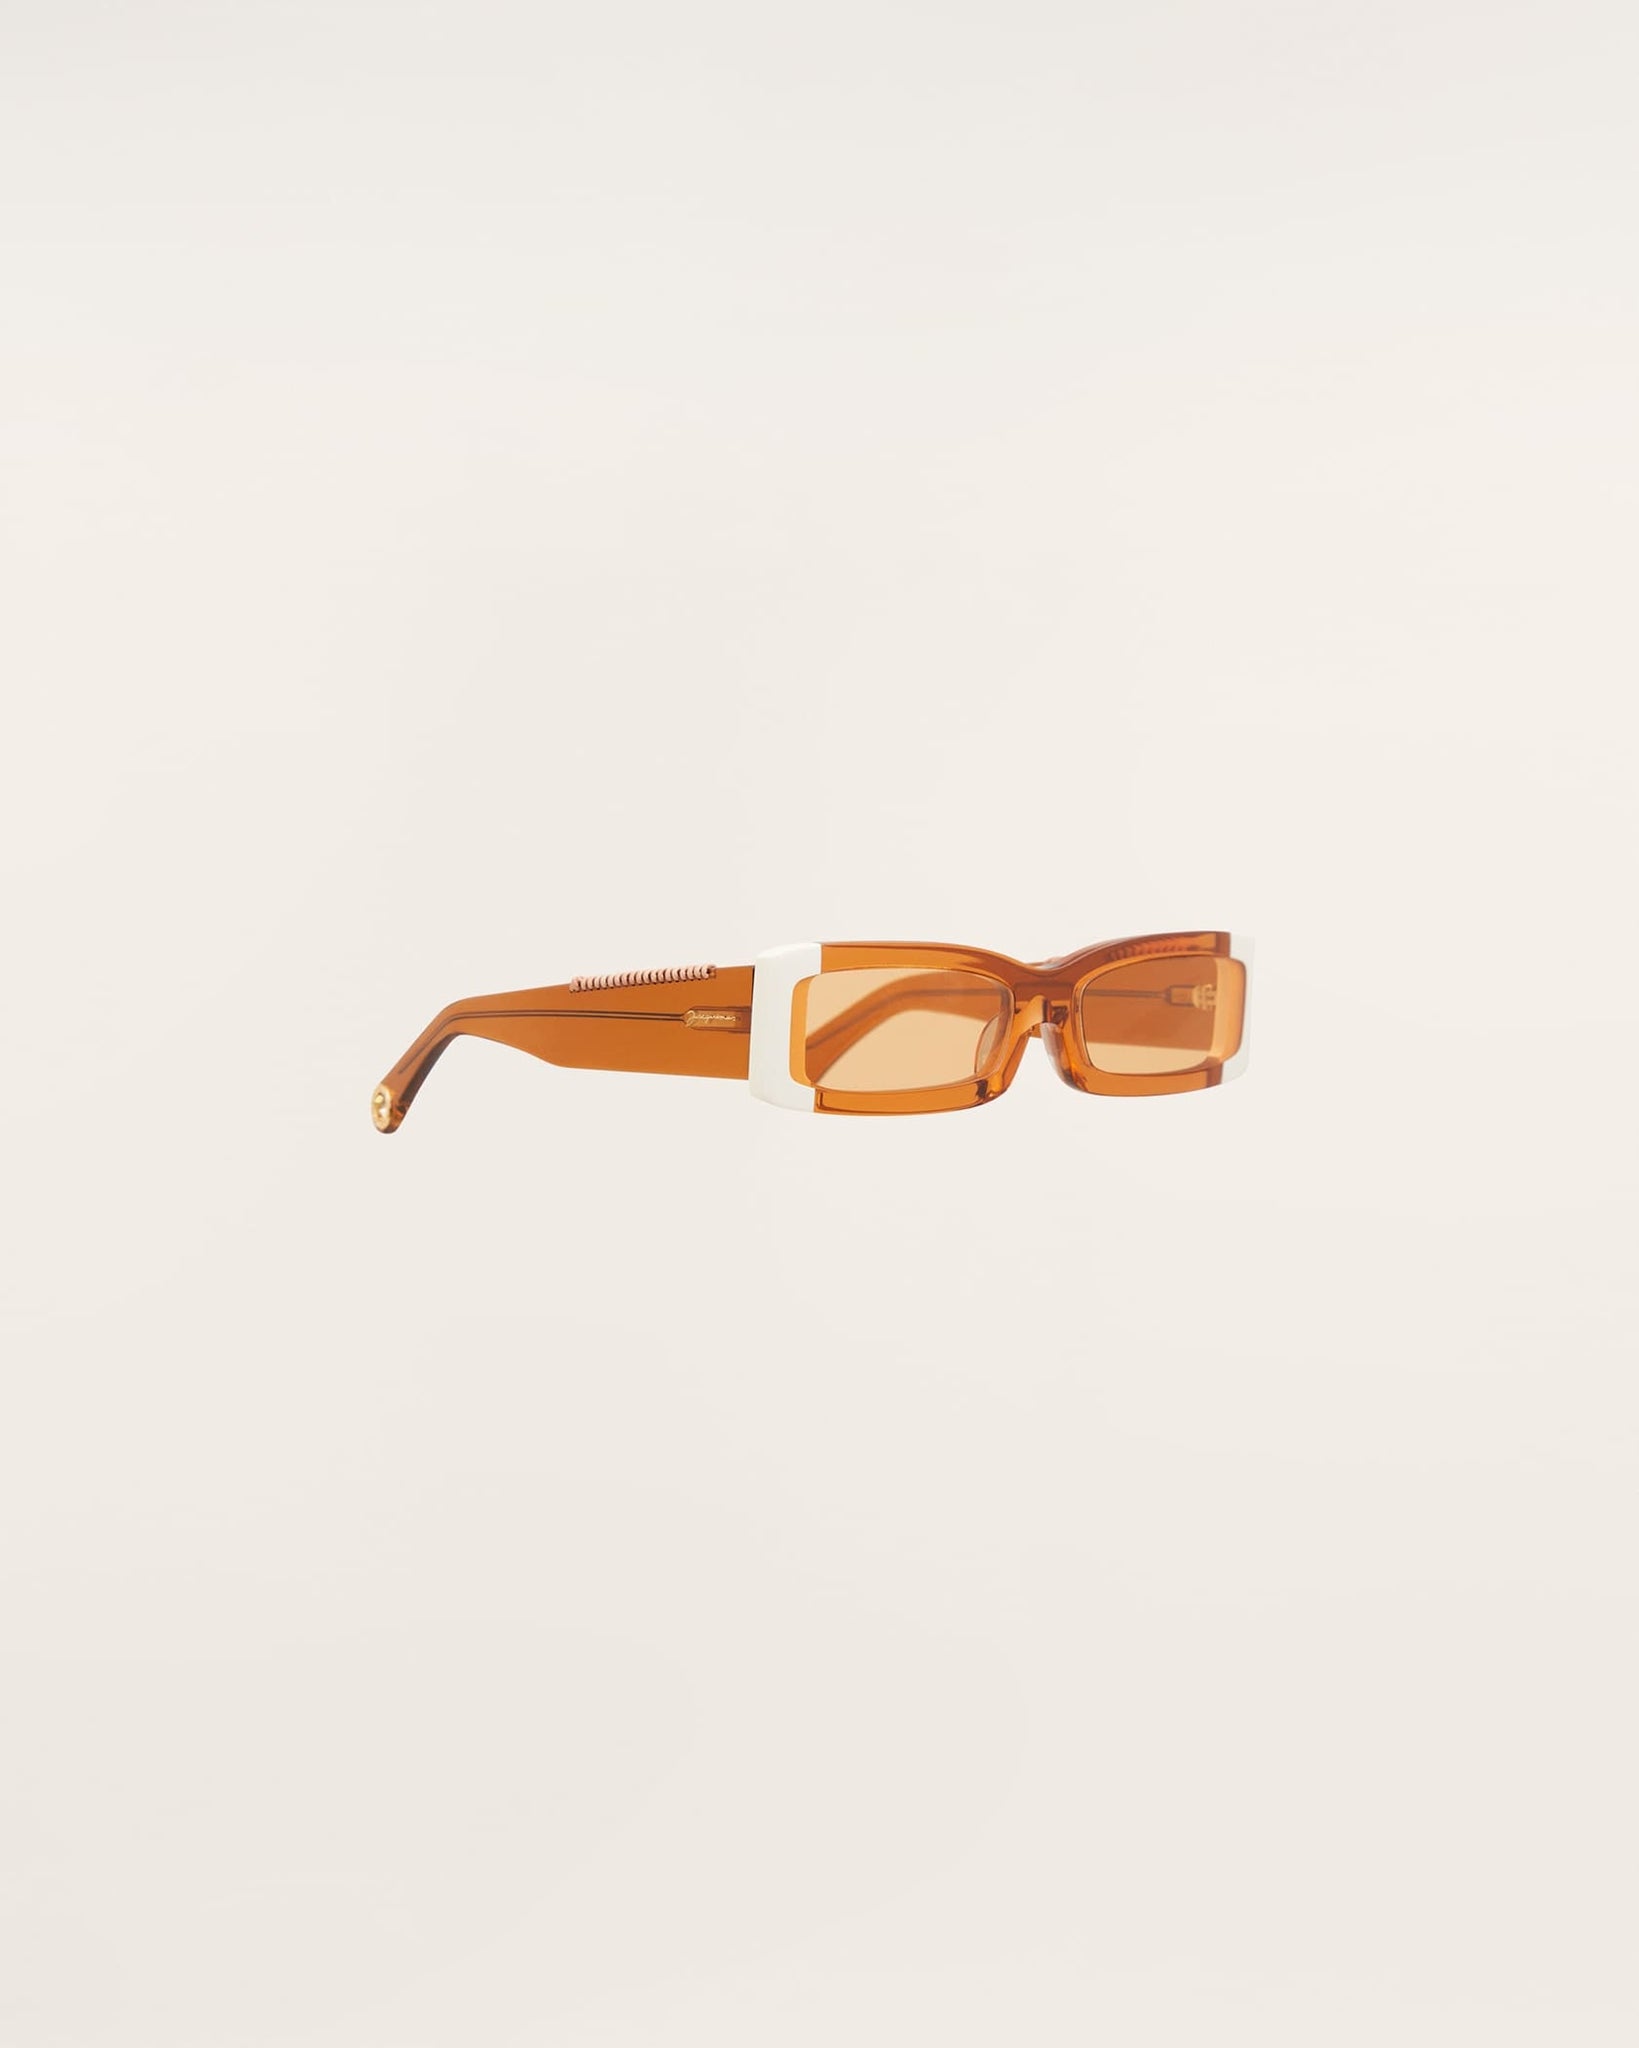 Les lunettes 97 shade of orange